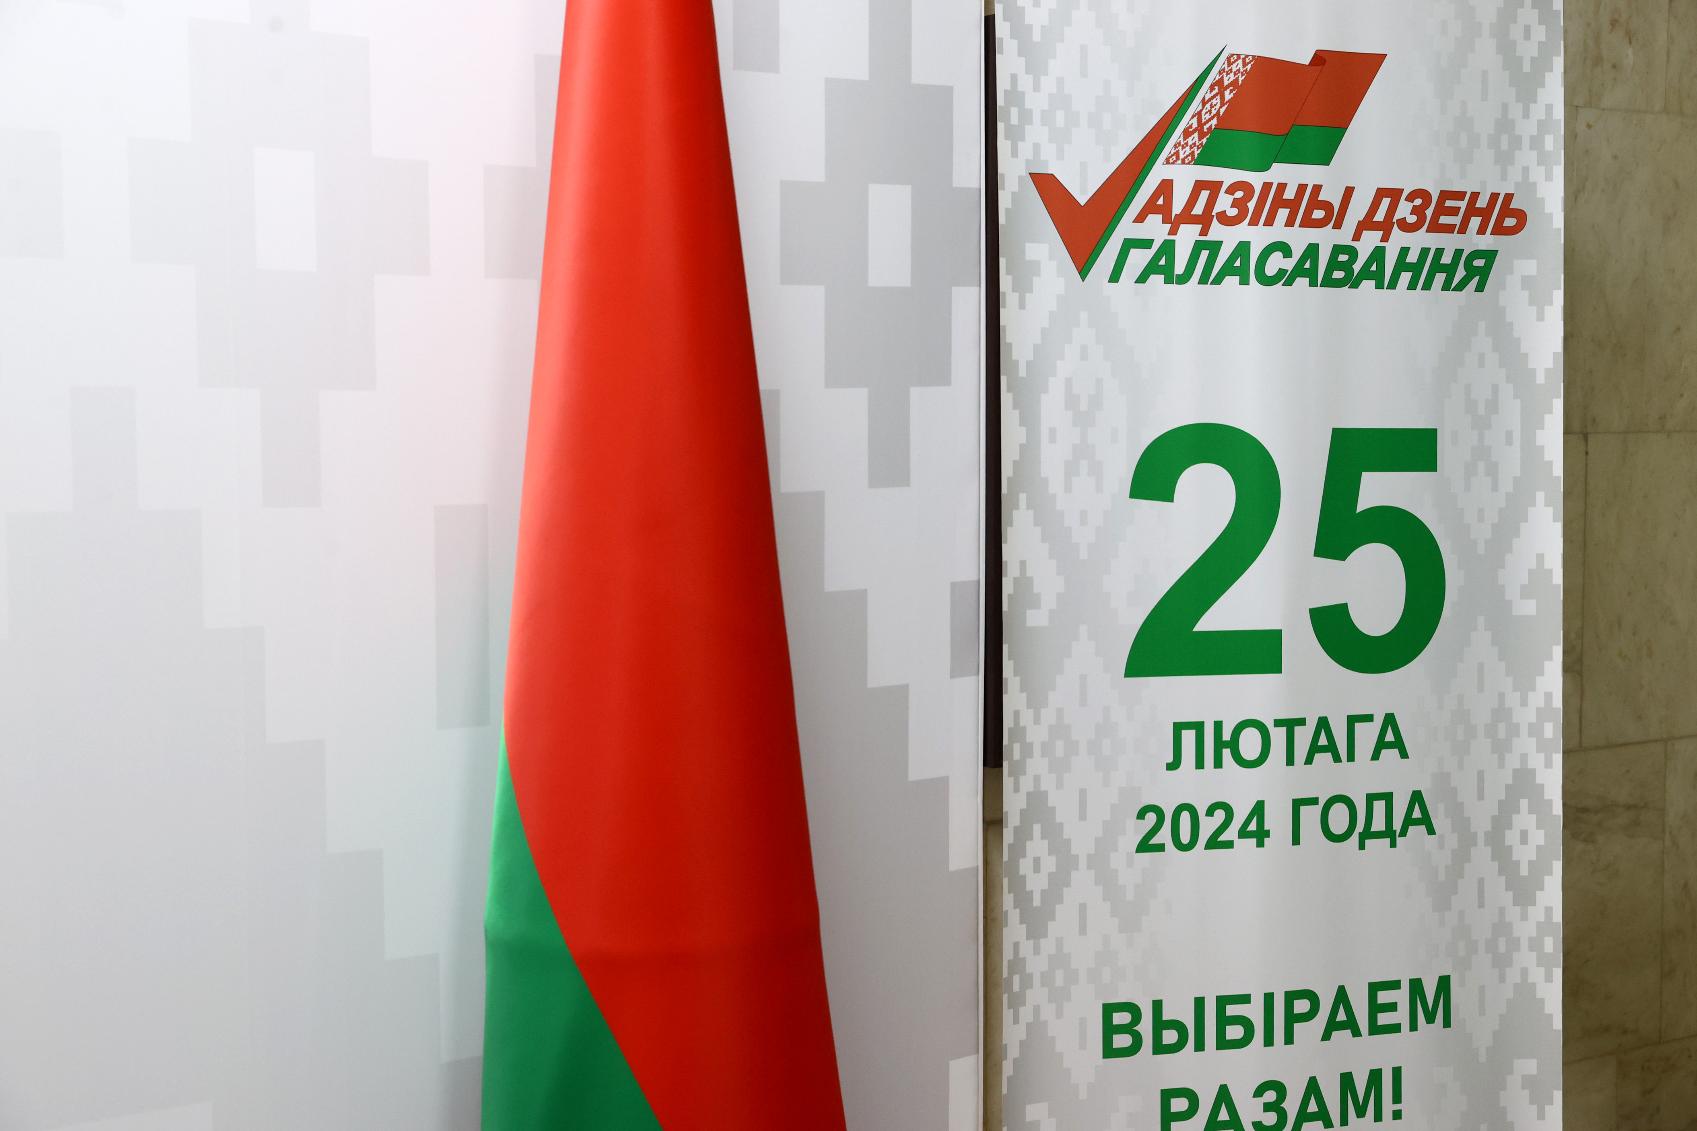 ЦИК России и ЦИК Беларуси обменяются делегациями для наблюдения за выборами